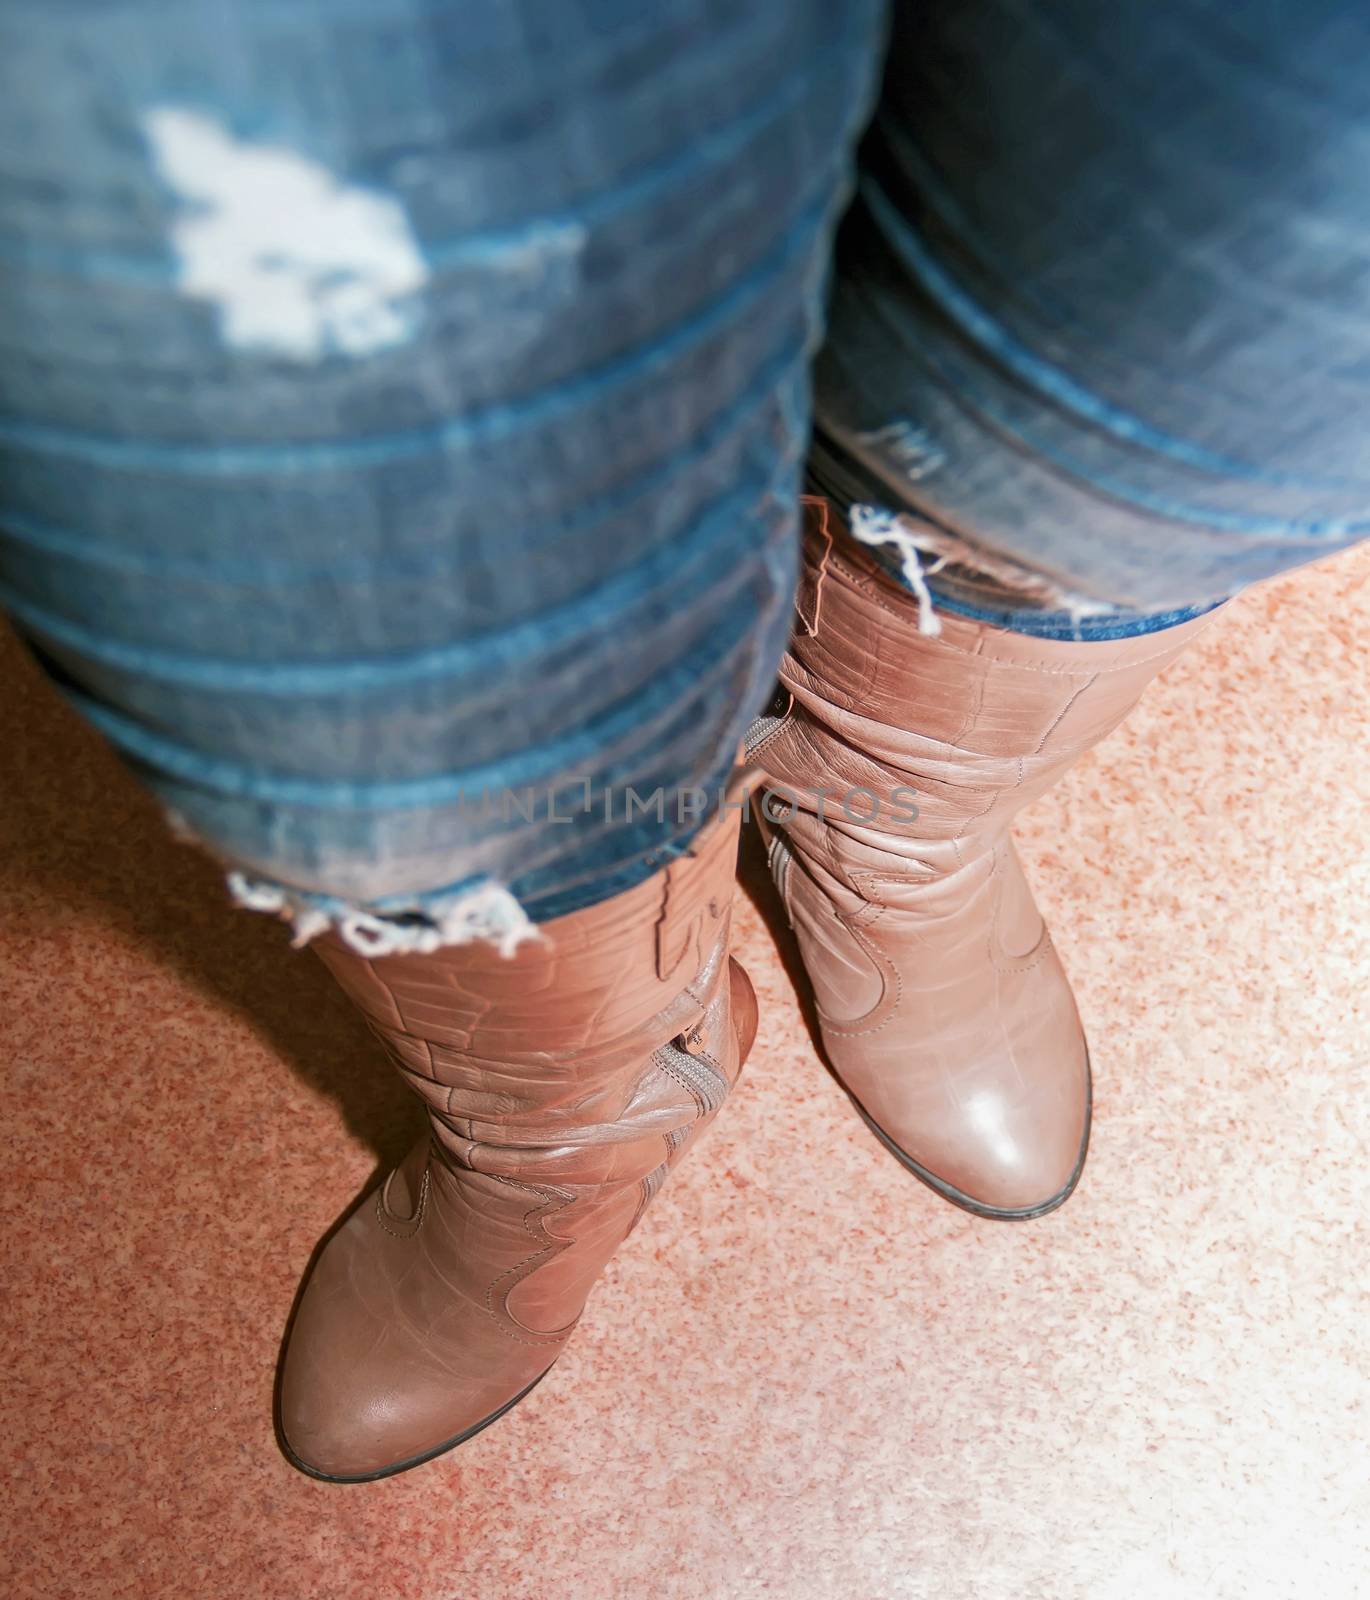 female legs in brown boots, women's shoes, heels by KoliadzynskaIryna